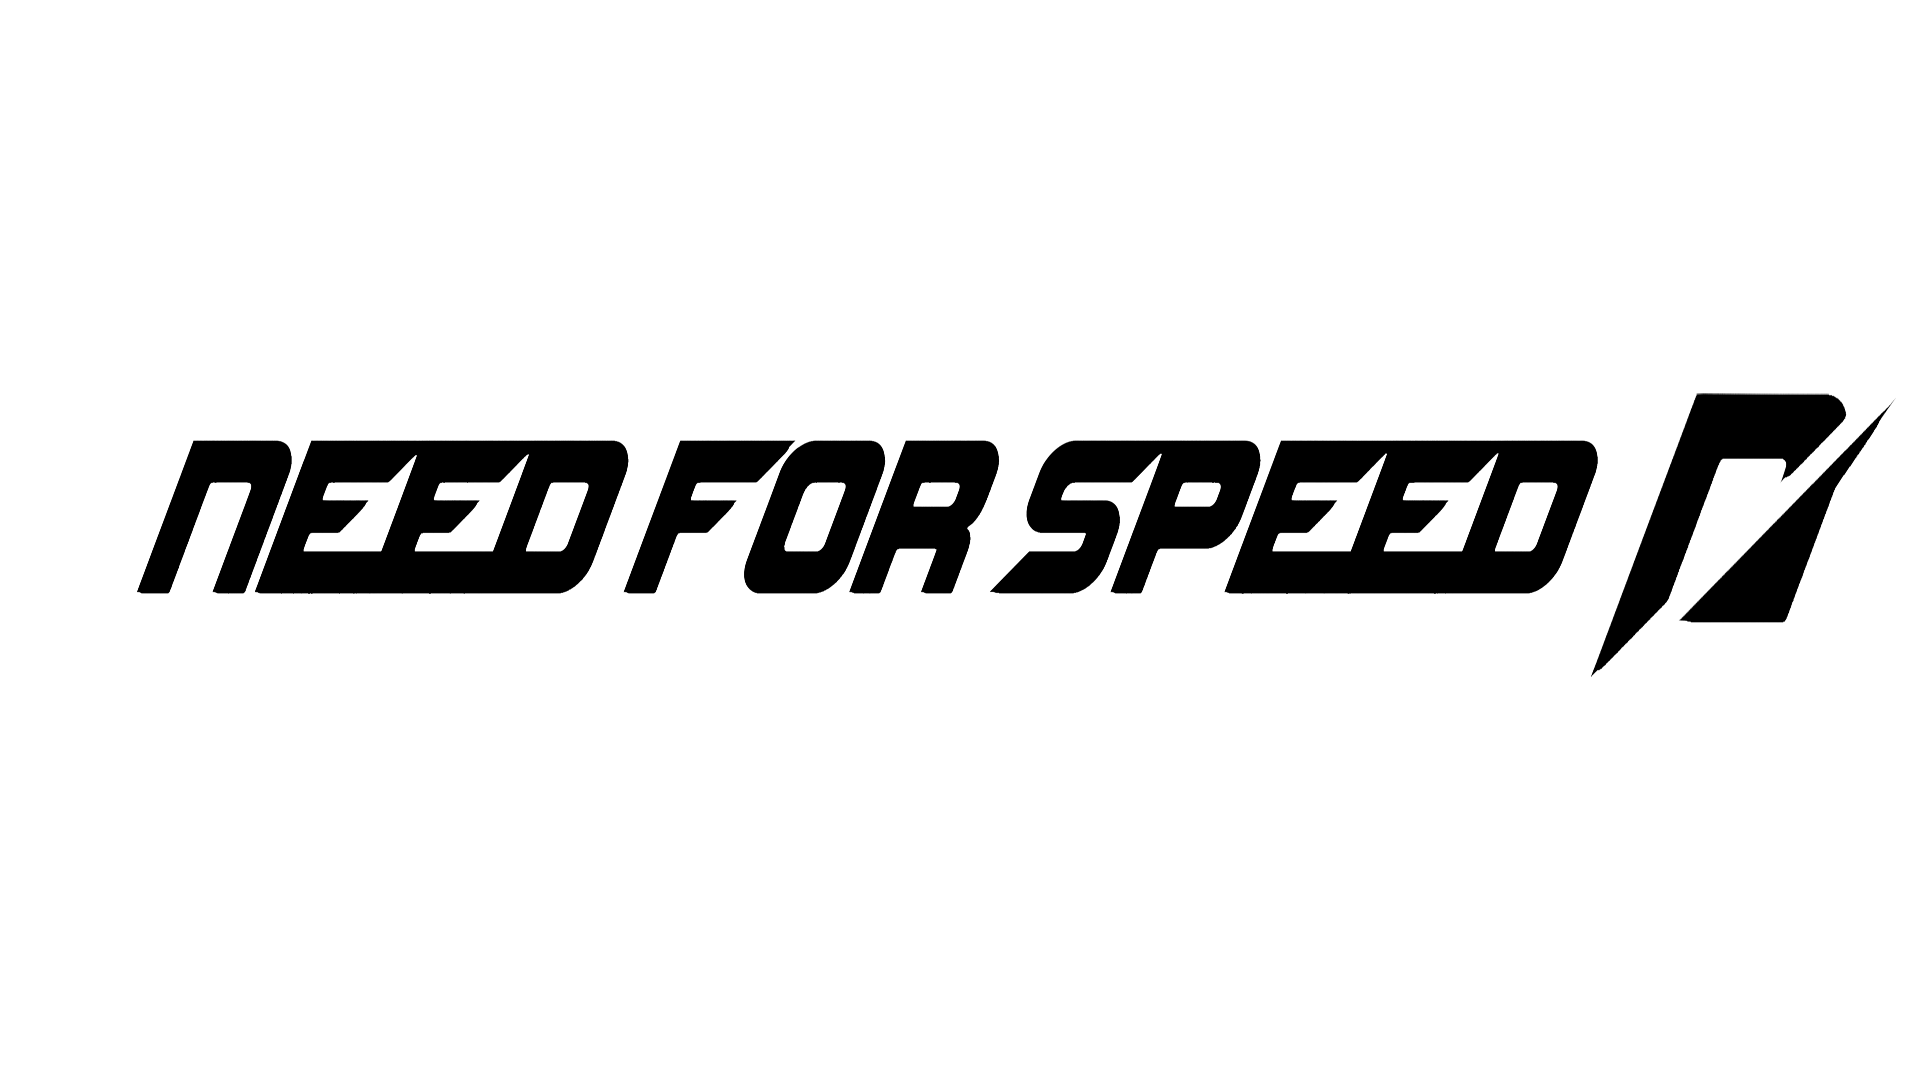 Besoin de vitesse logo PNG Image